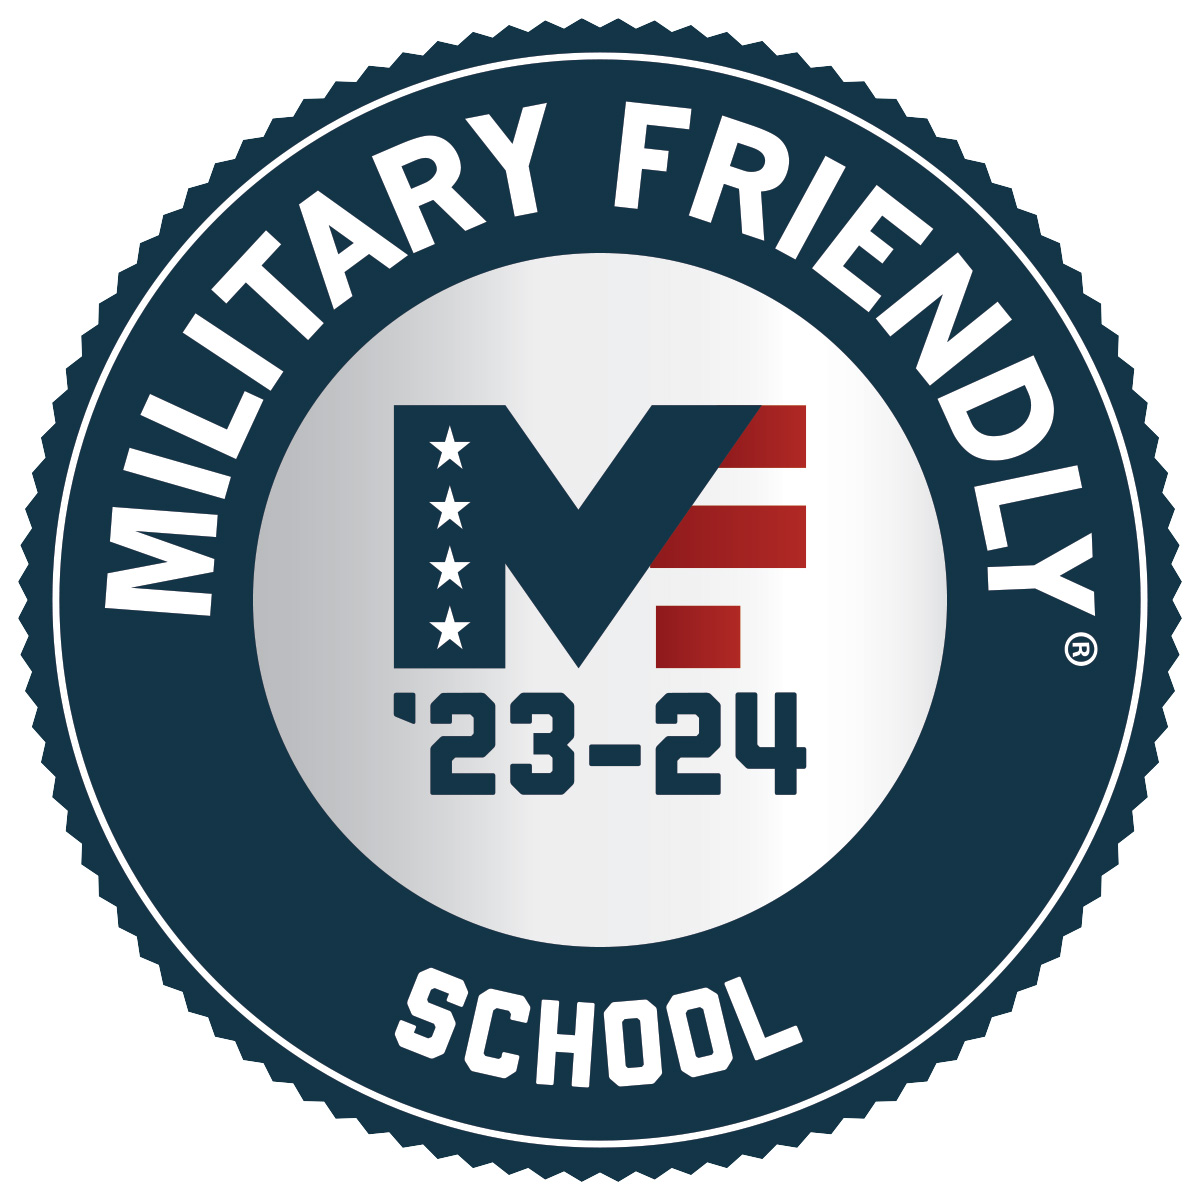 Military Friendly School